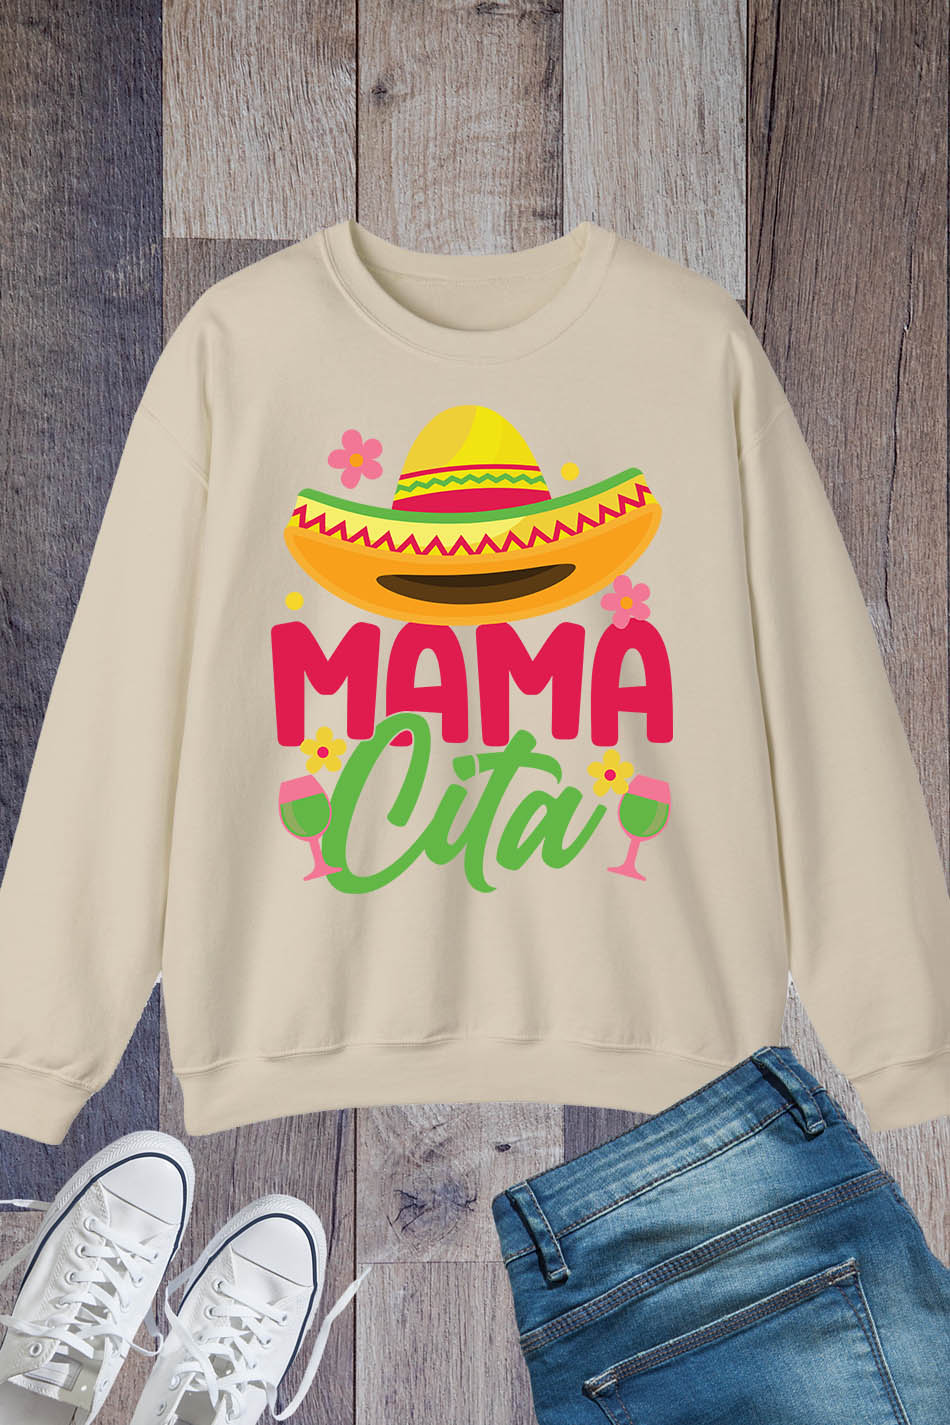 Mama Cita Cinco De Mayo Sweatshirt